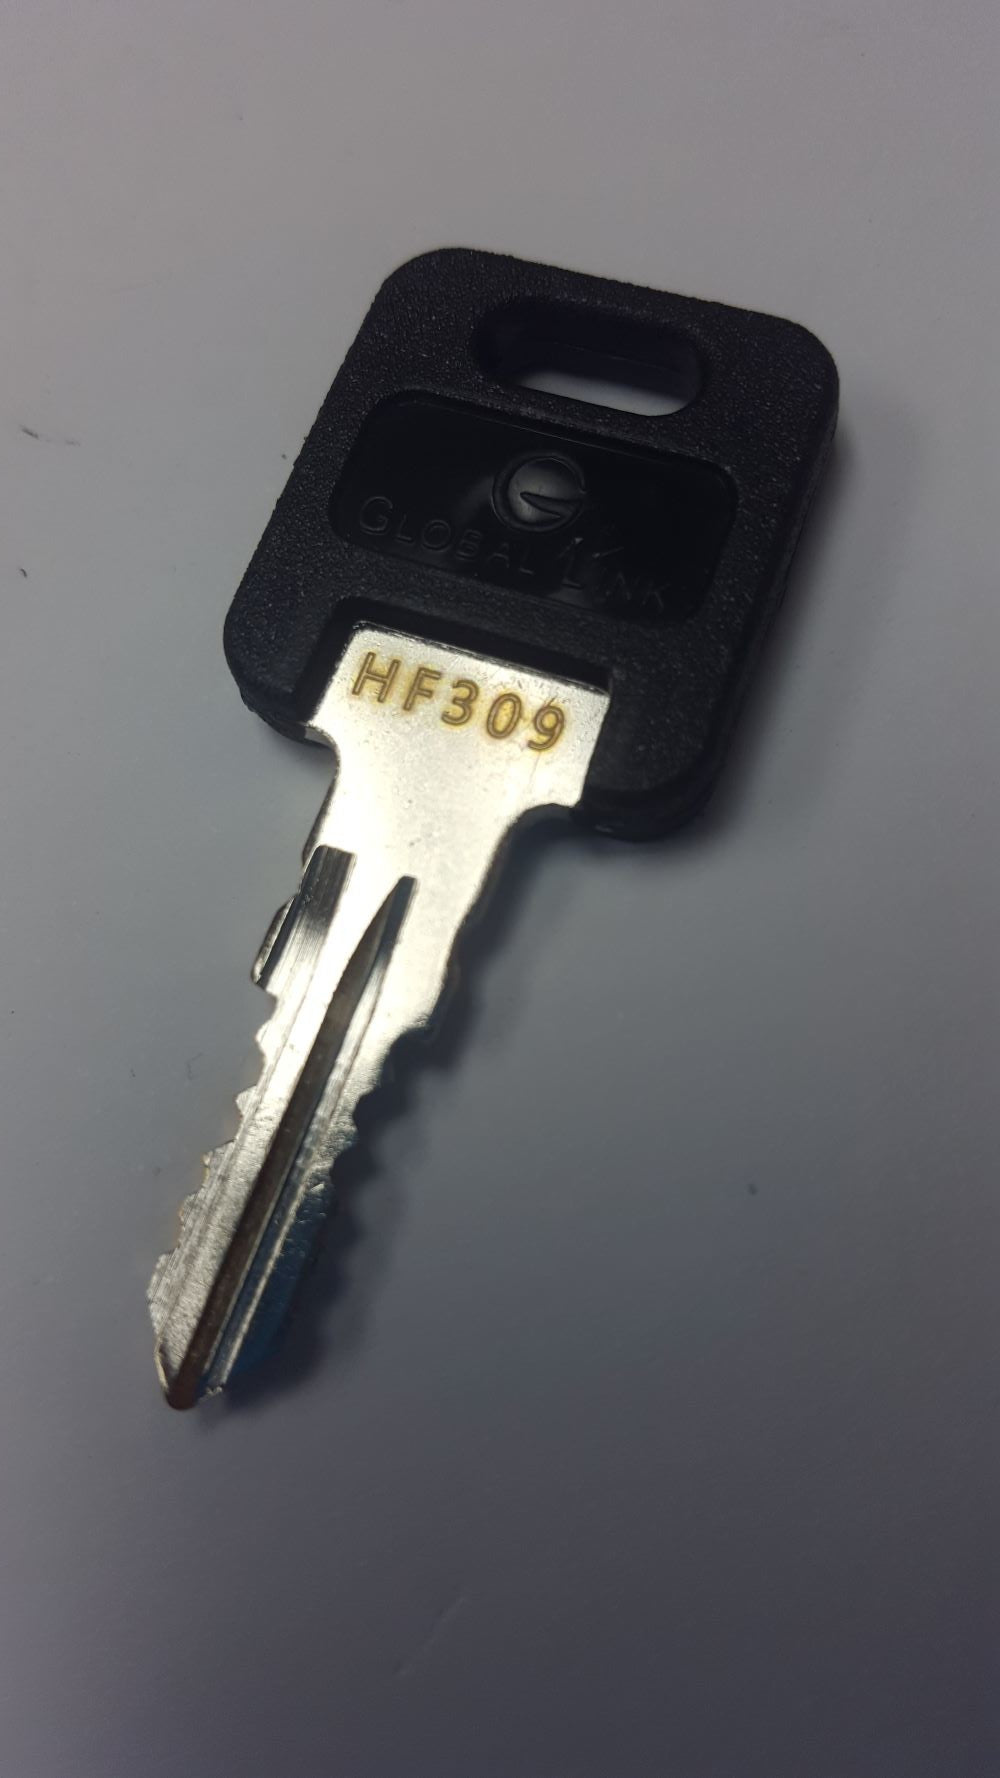 CPG KEY-HF-309 Pre-cut Stamped FIC Replacemnt HF309 Key